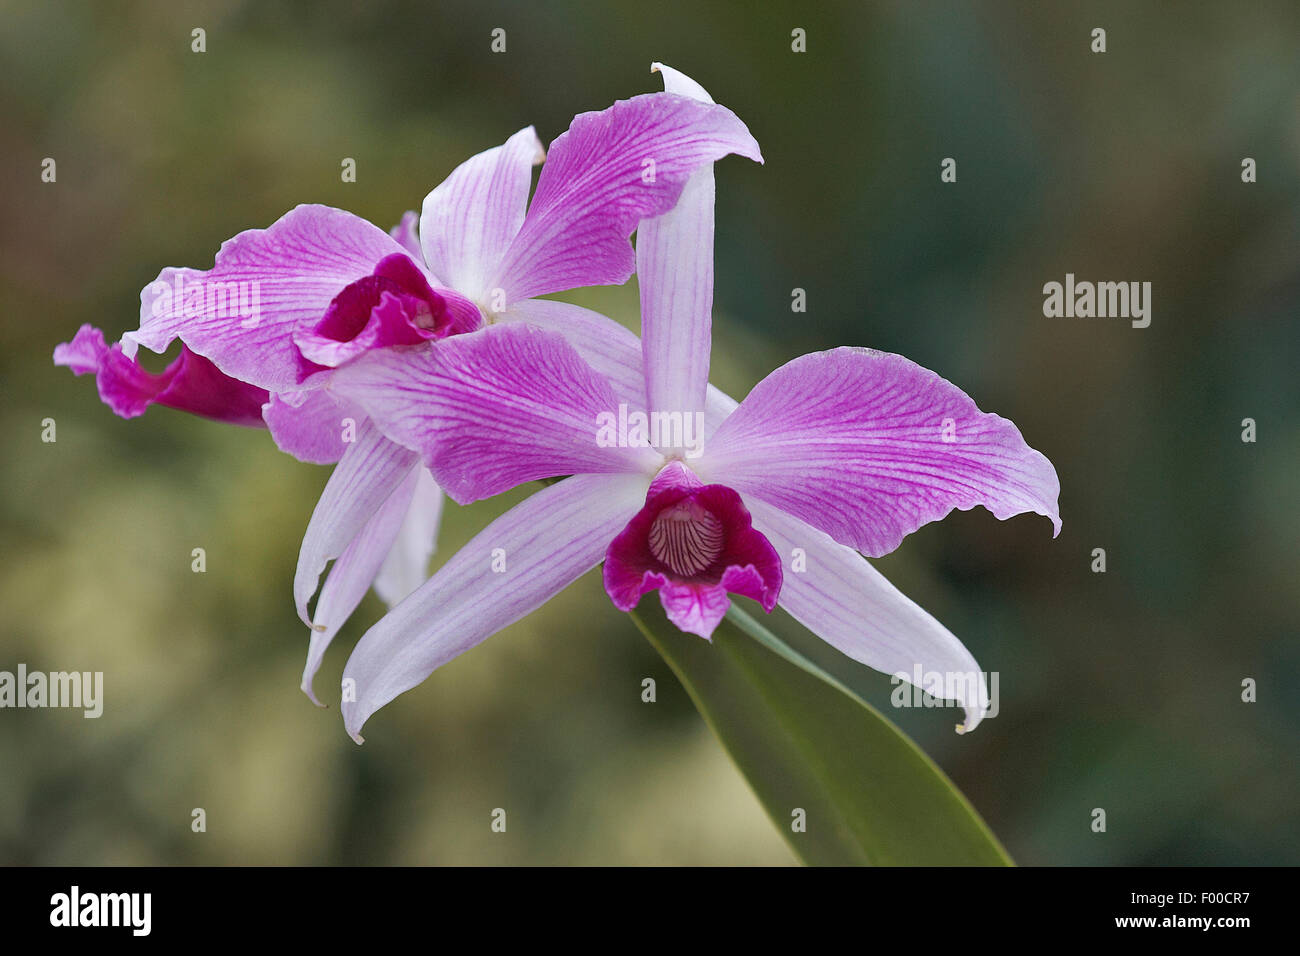 Cattleya (Cattleya purpurata, Laelia purpurata), flowers Stock Photo